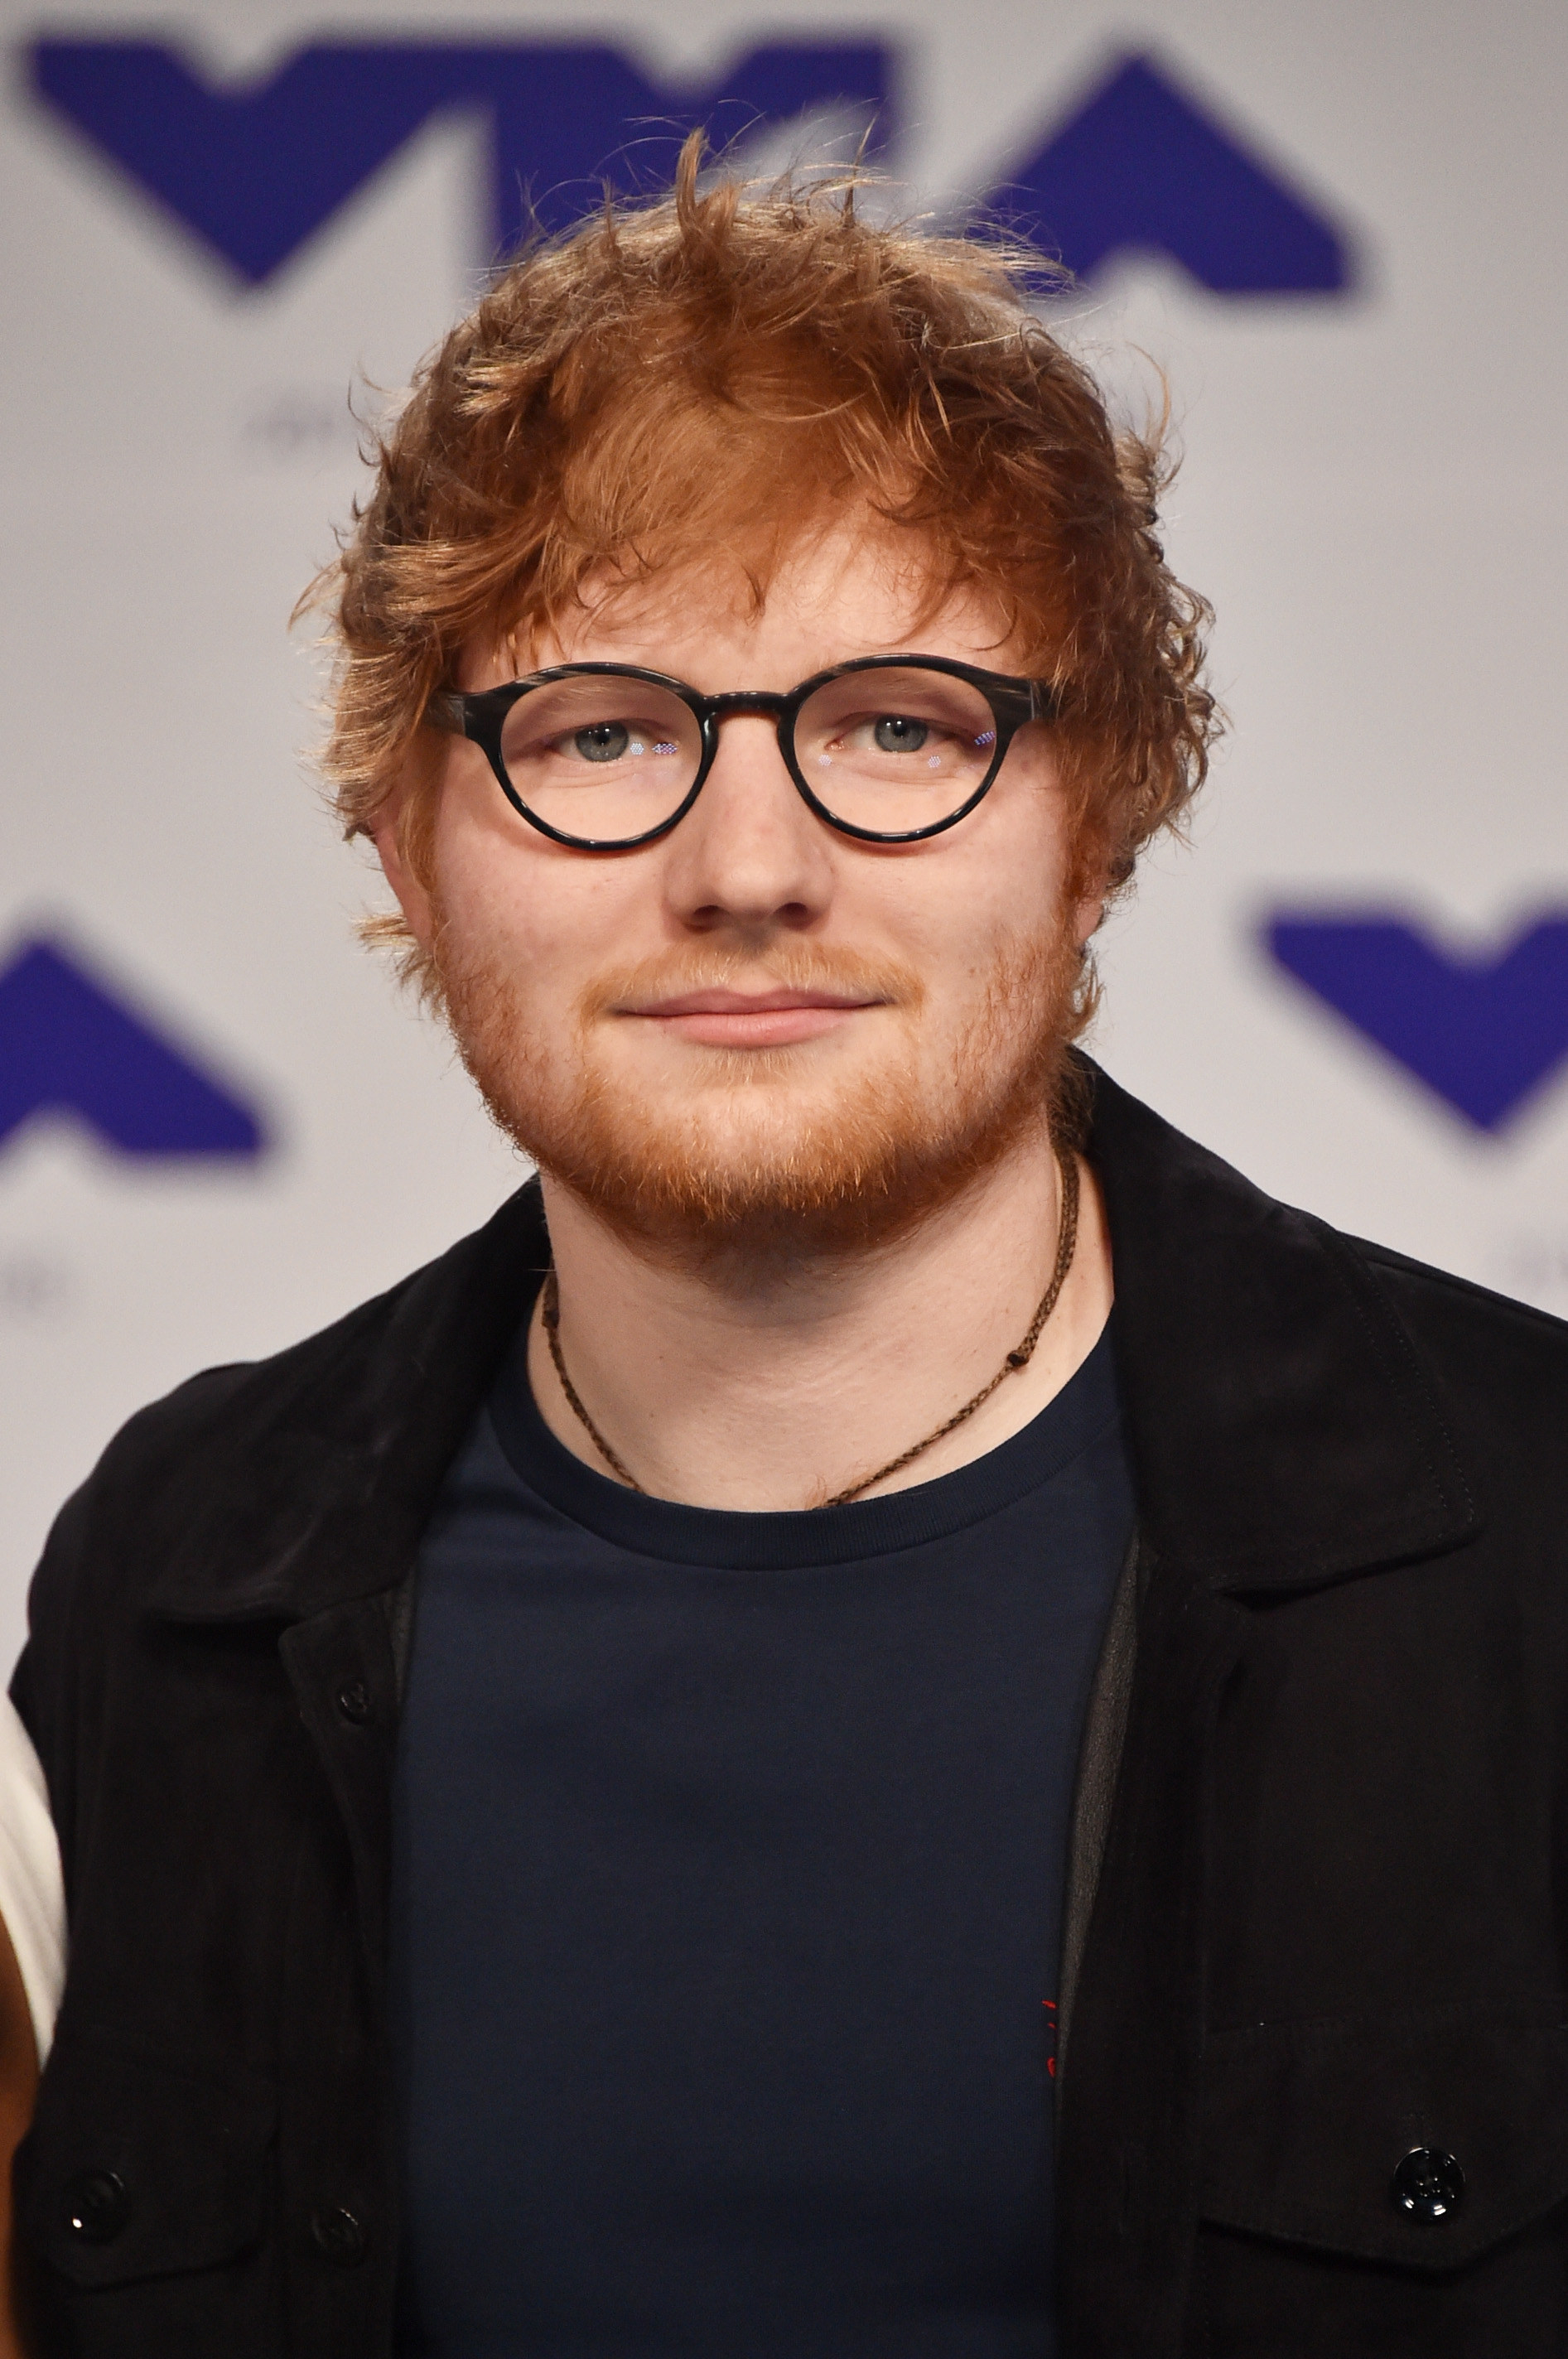 A closeup of Ed Sheeran